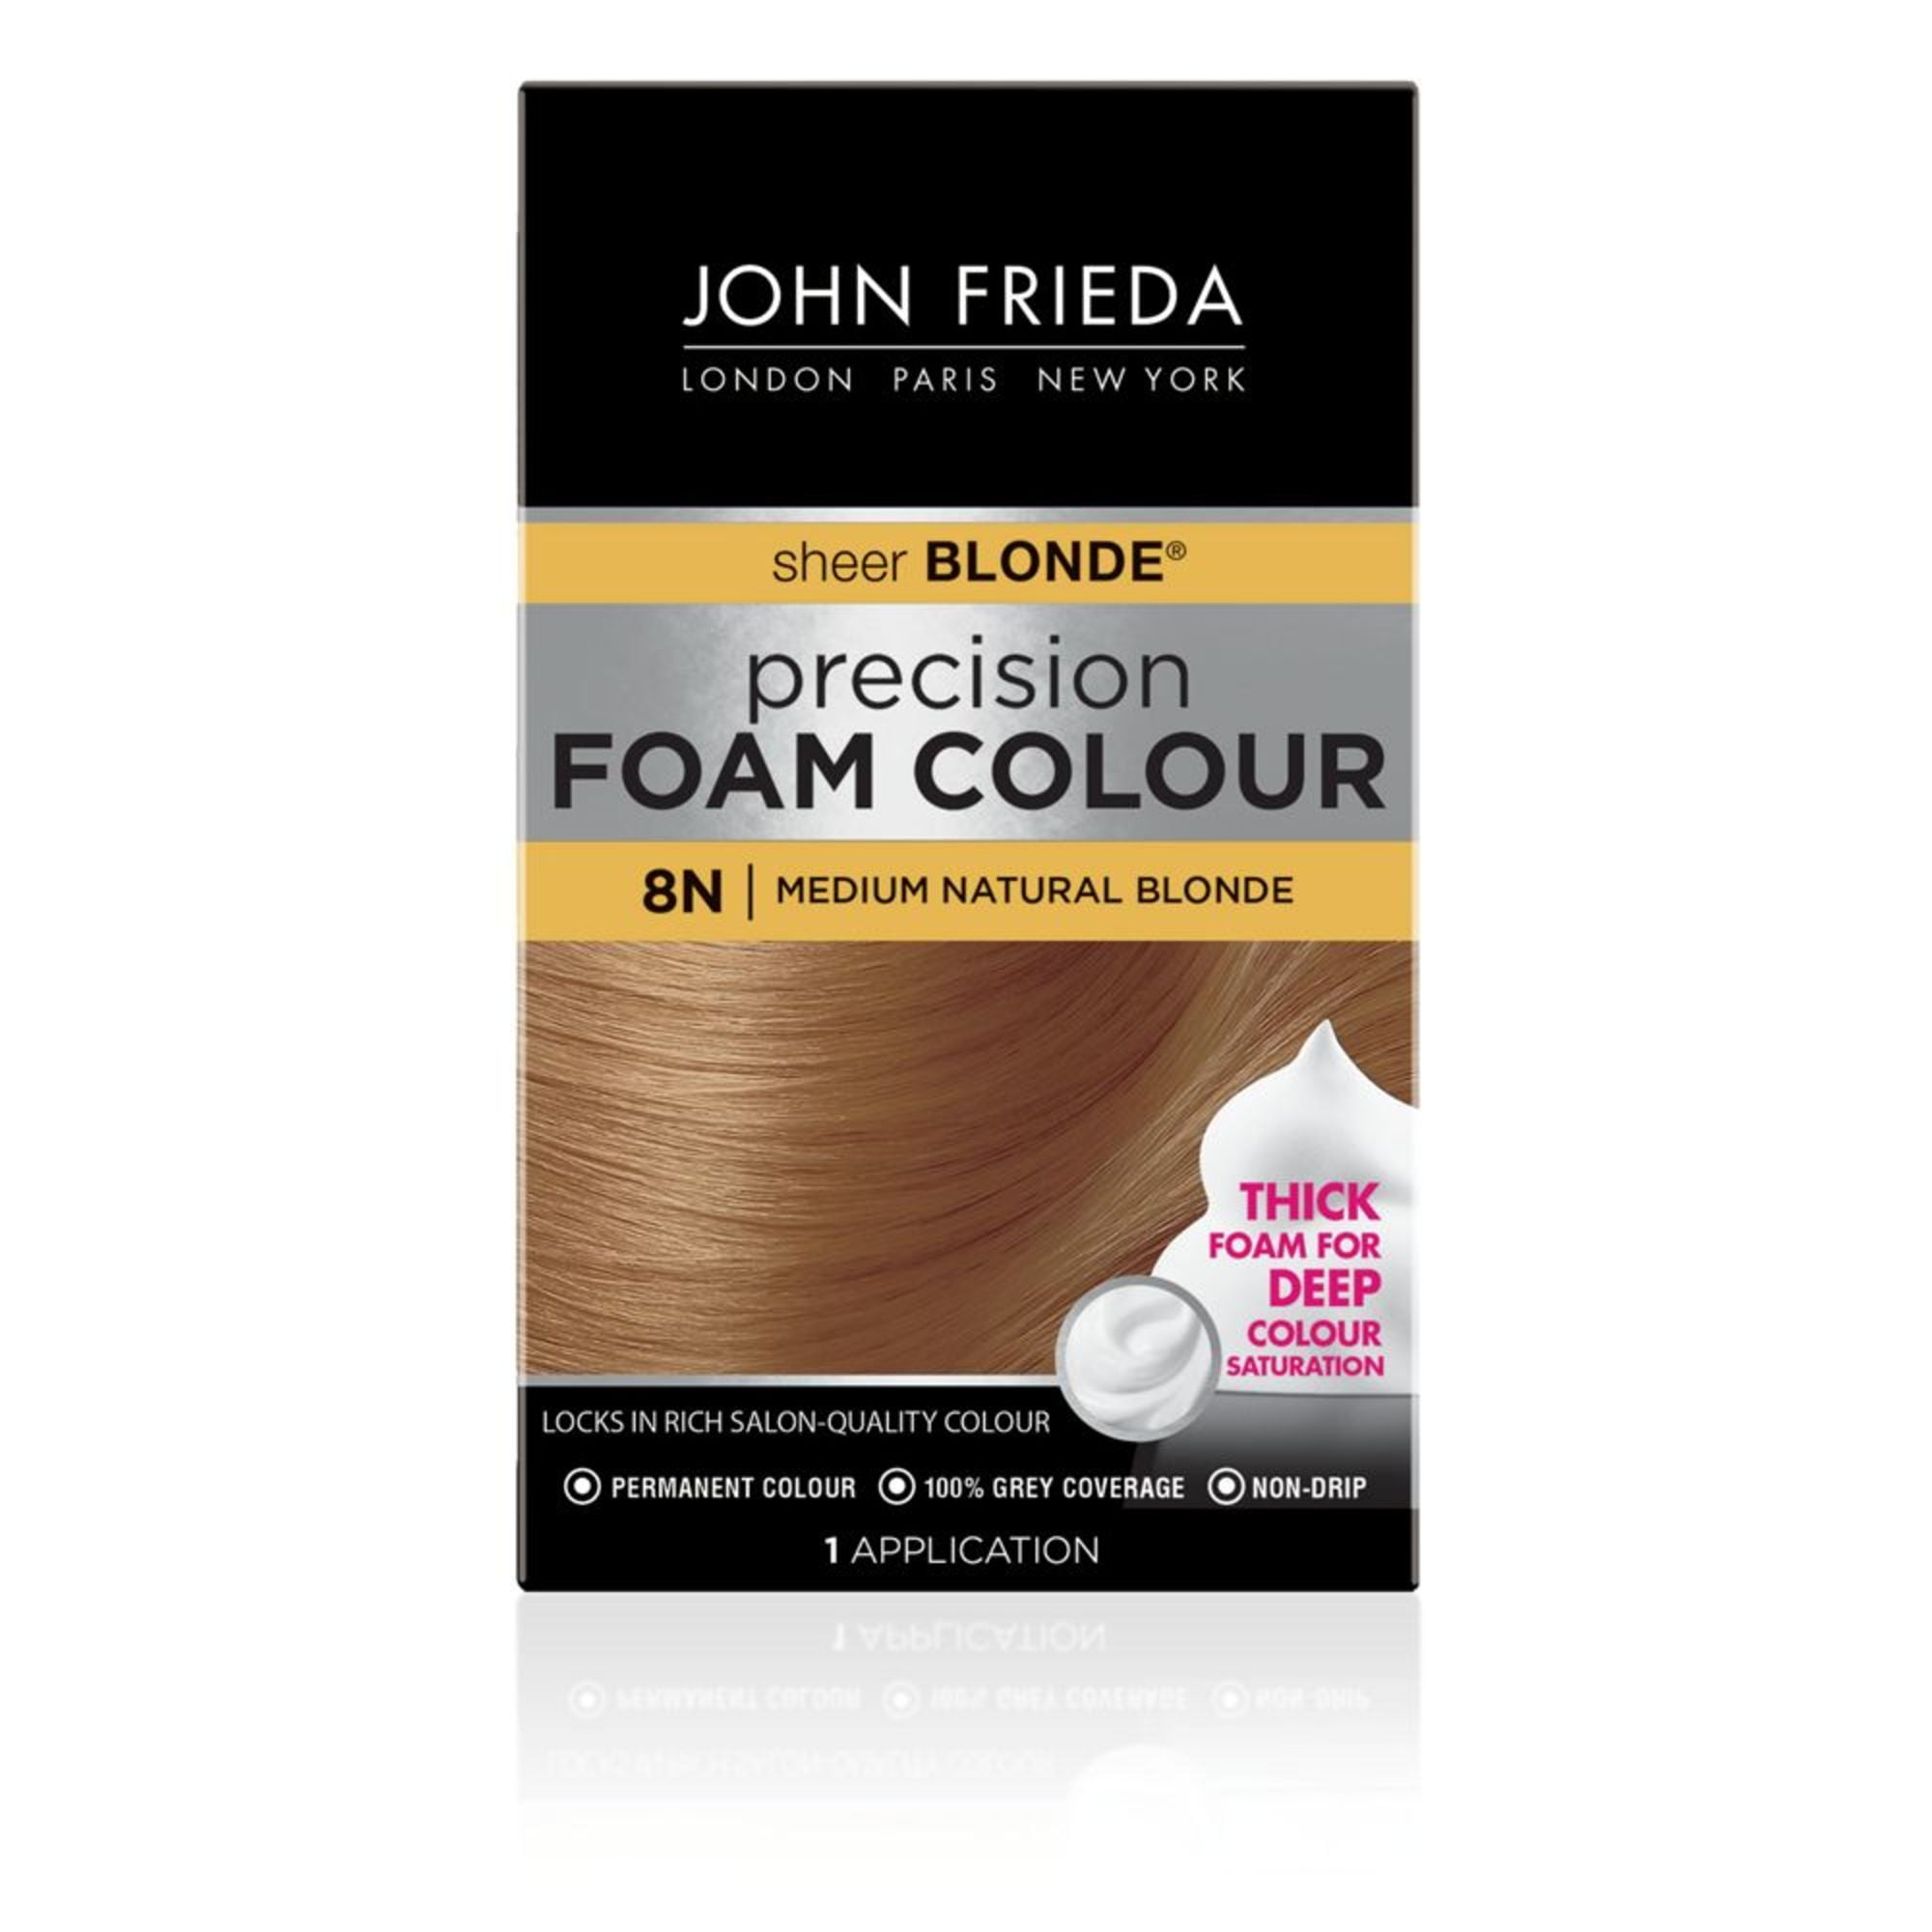 Medaille Beheer helemaal John Frieda Sheer Blonde Permanent Precision Hair Color Foam, 8N Medium  Natural Blonde, 1 Application - Walmart.com